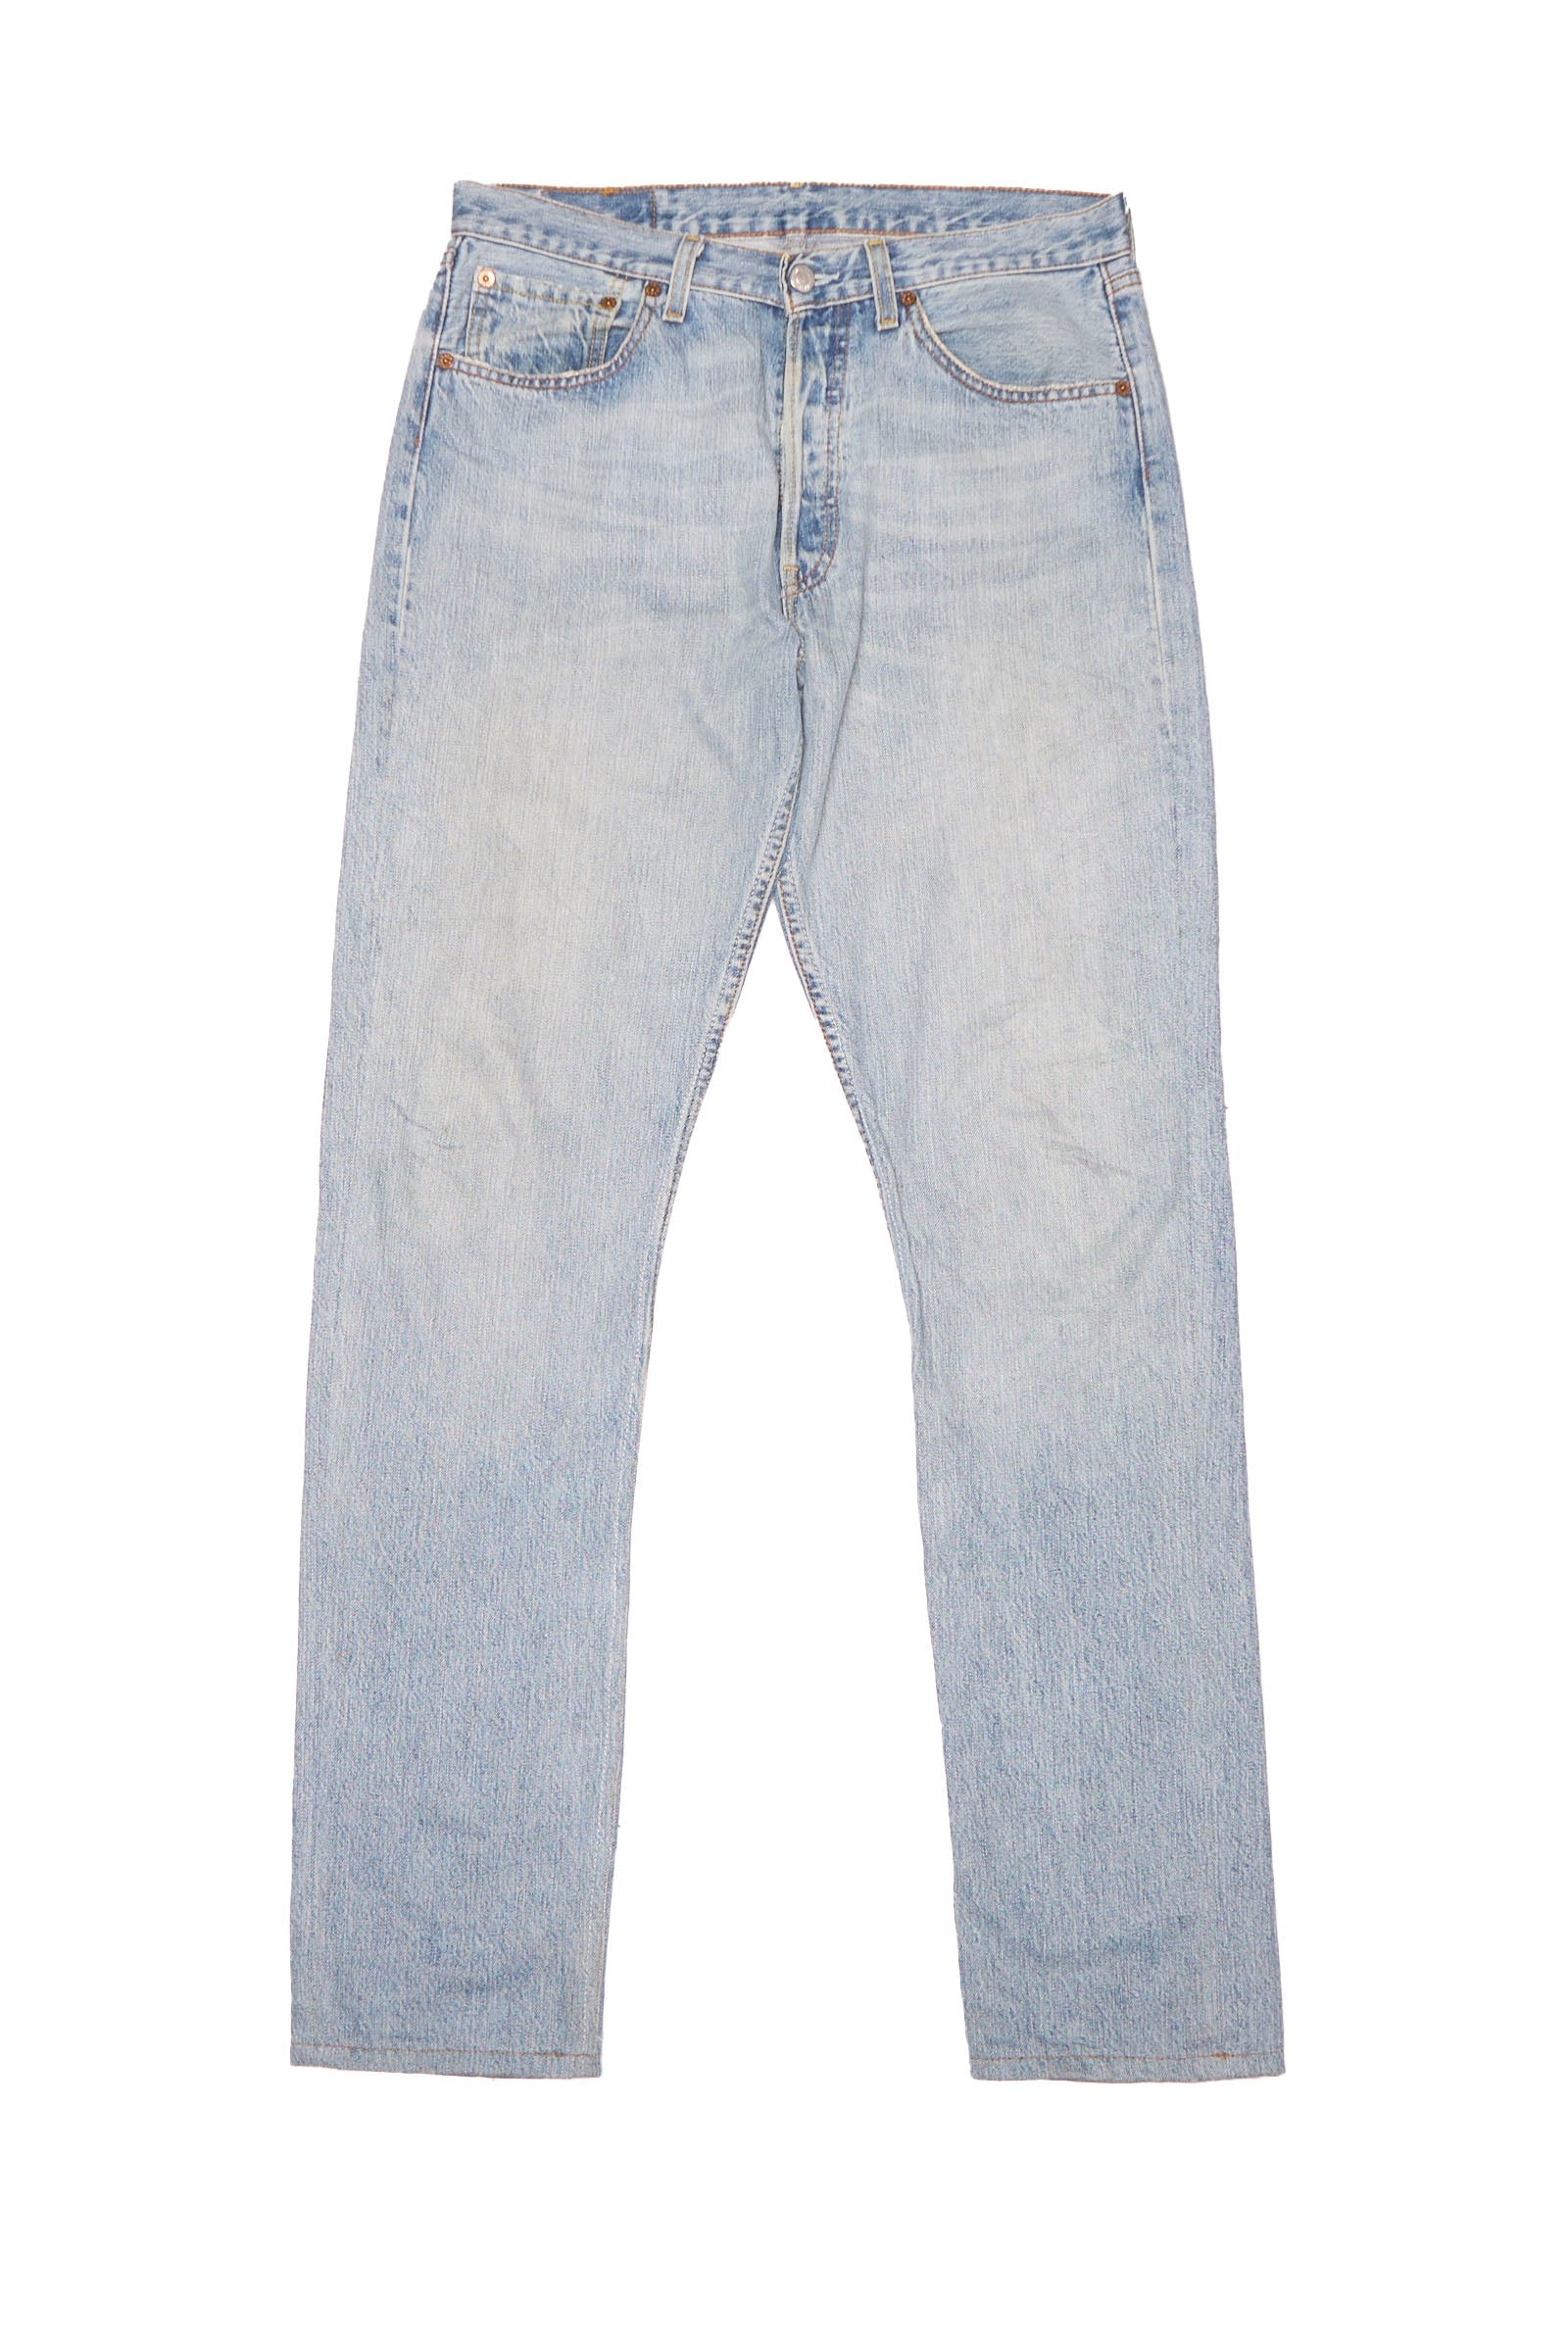 Button Up Levis Straight Cut Jeans - W32" L34"